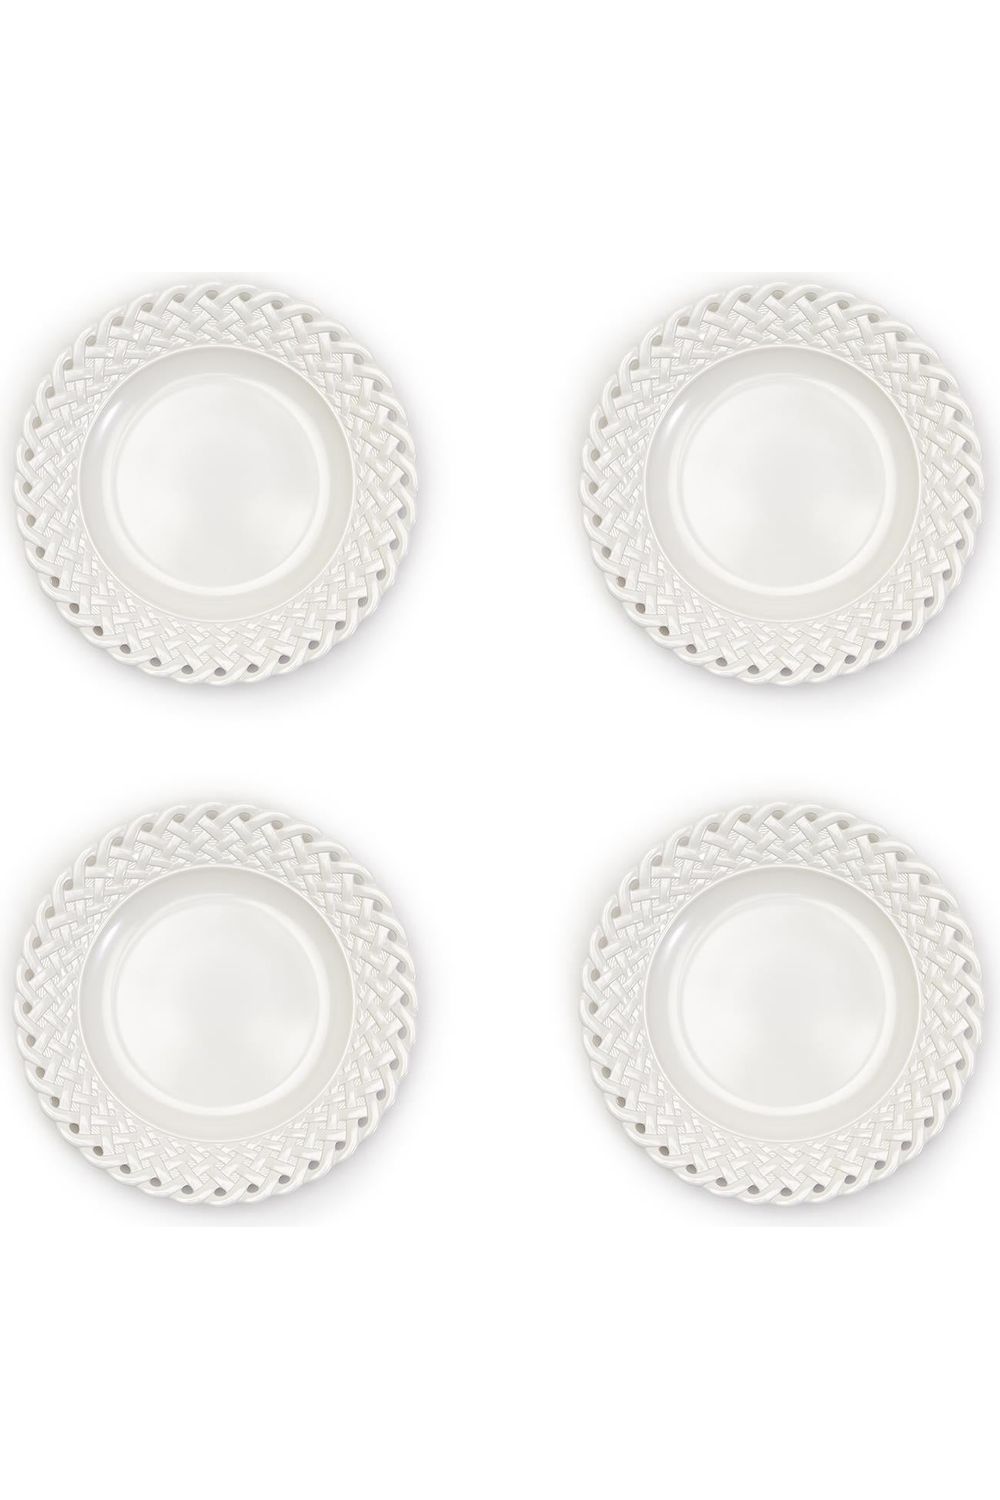 White Lattice Melamine Dinner Plates - S/4